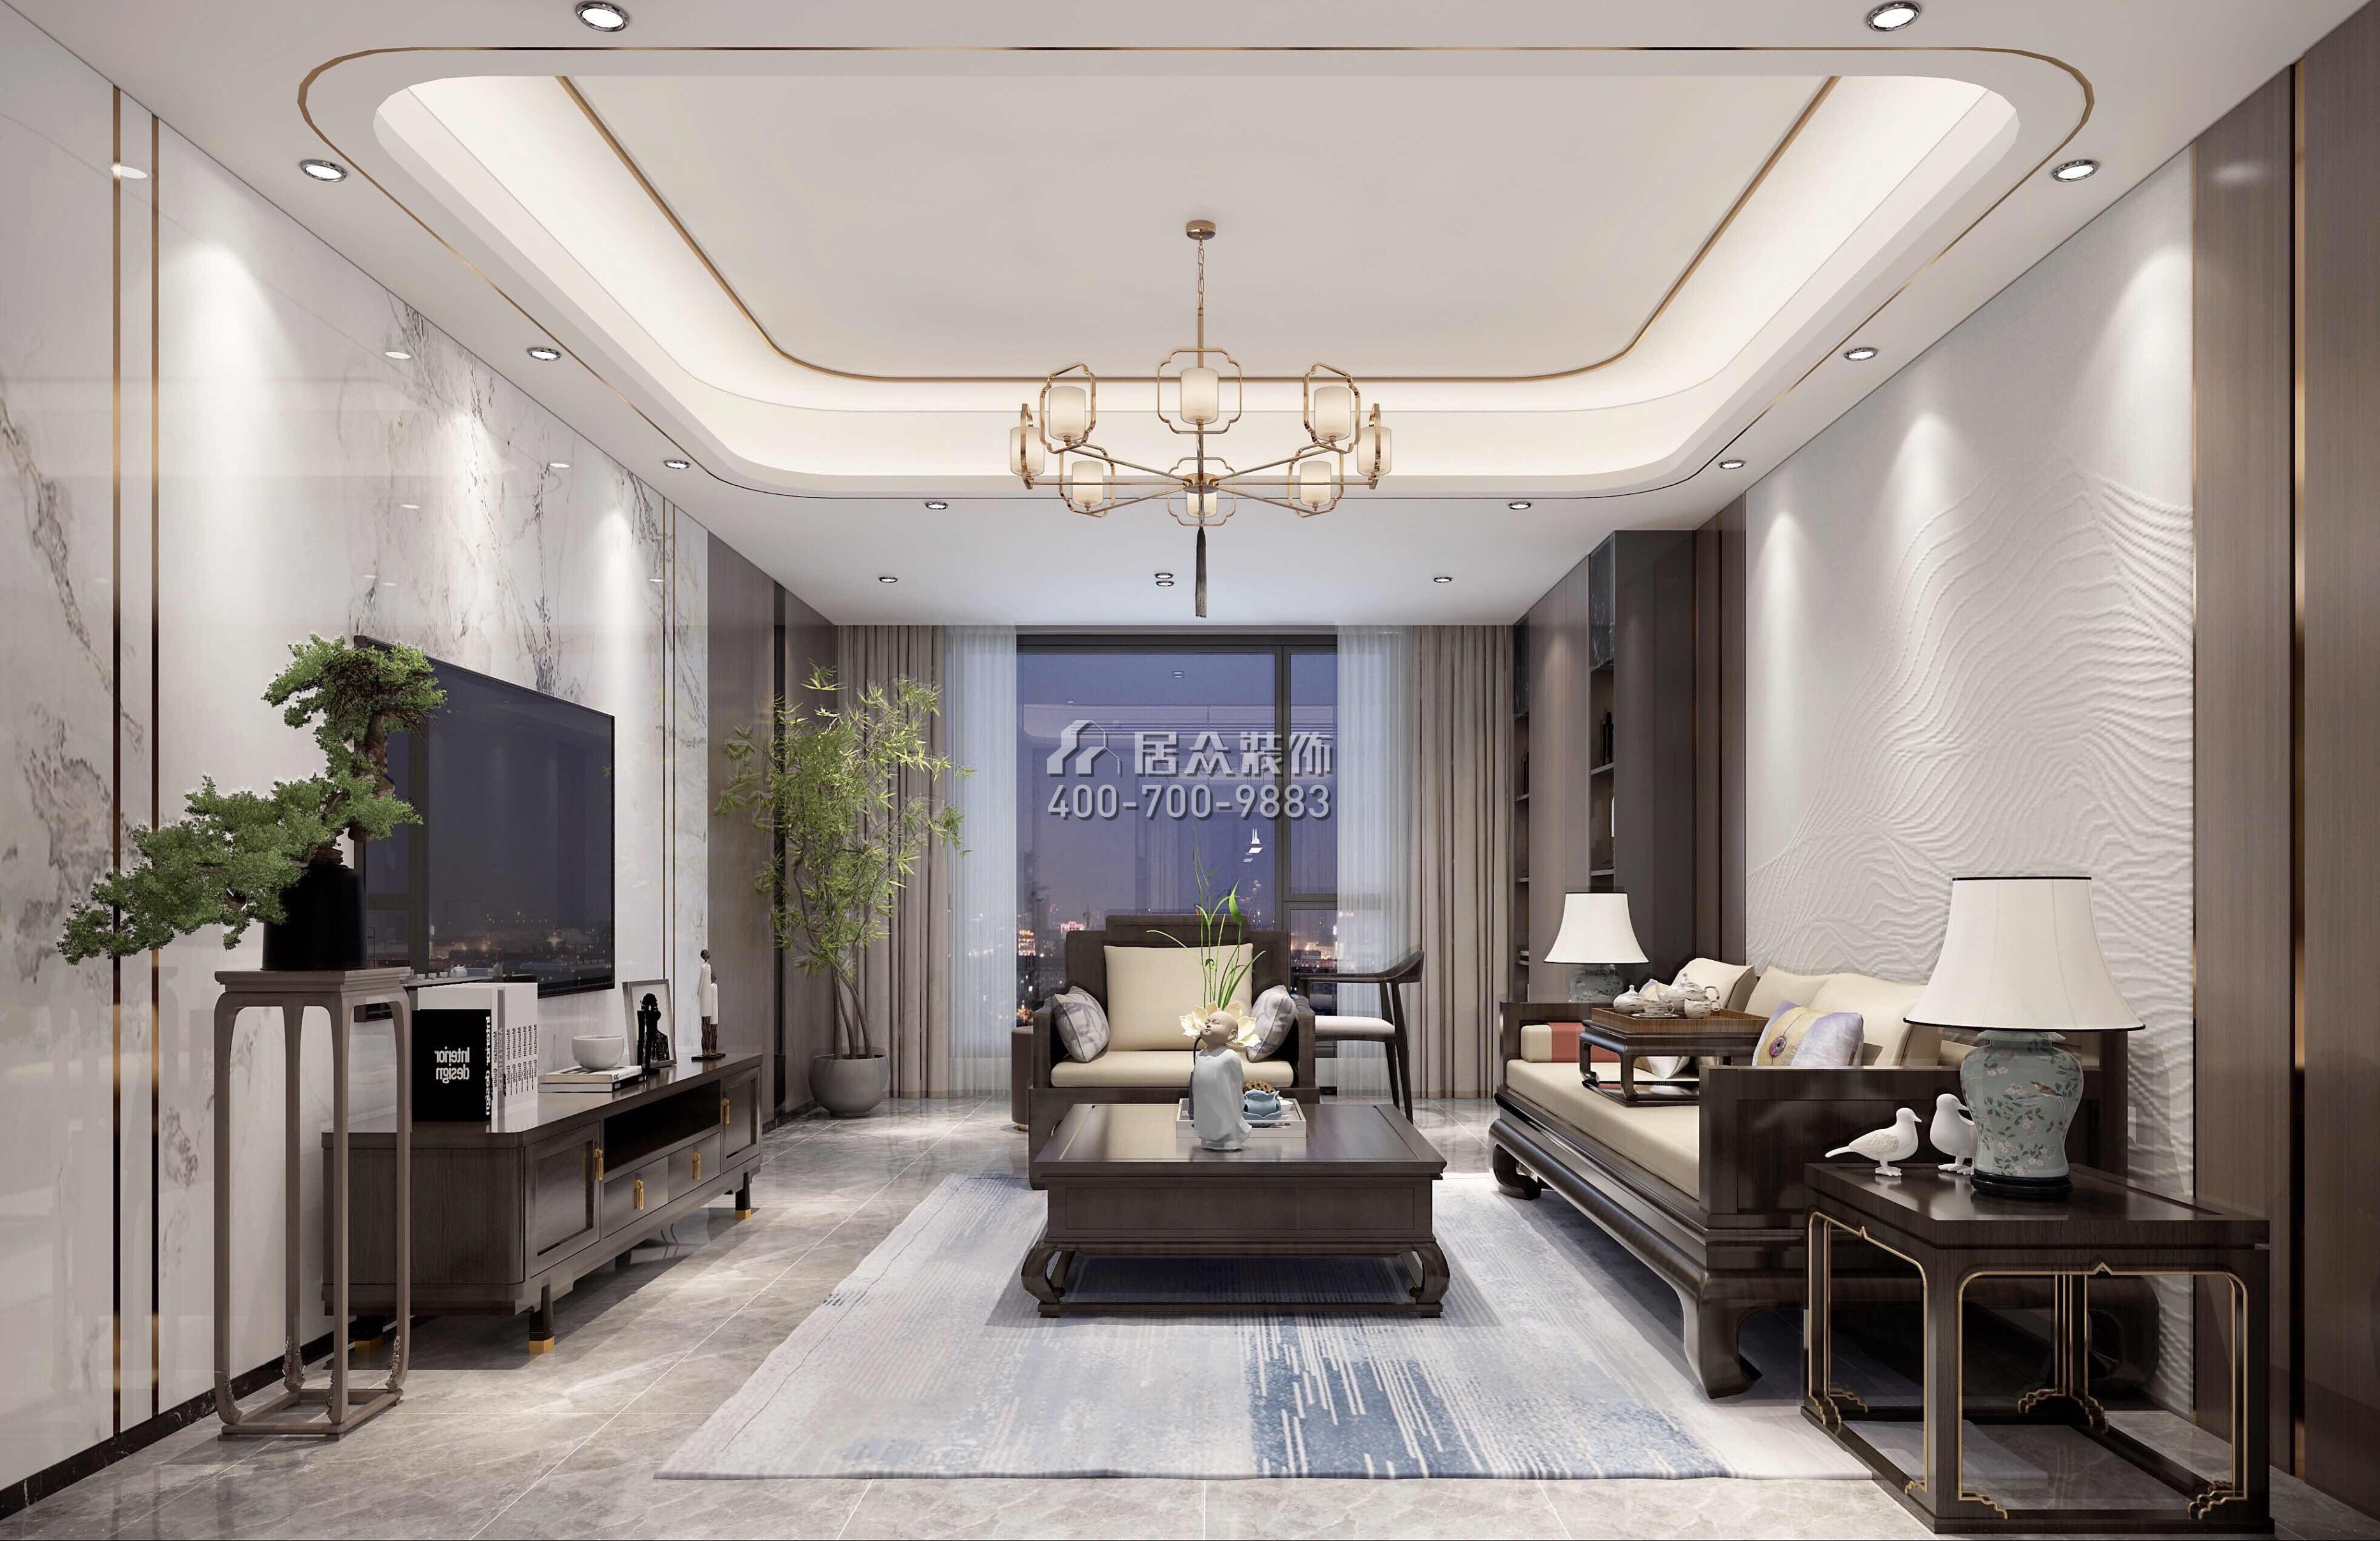 翠湖香山140平方米中式風格平層戶型客廳裝修效果圖